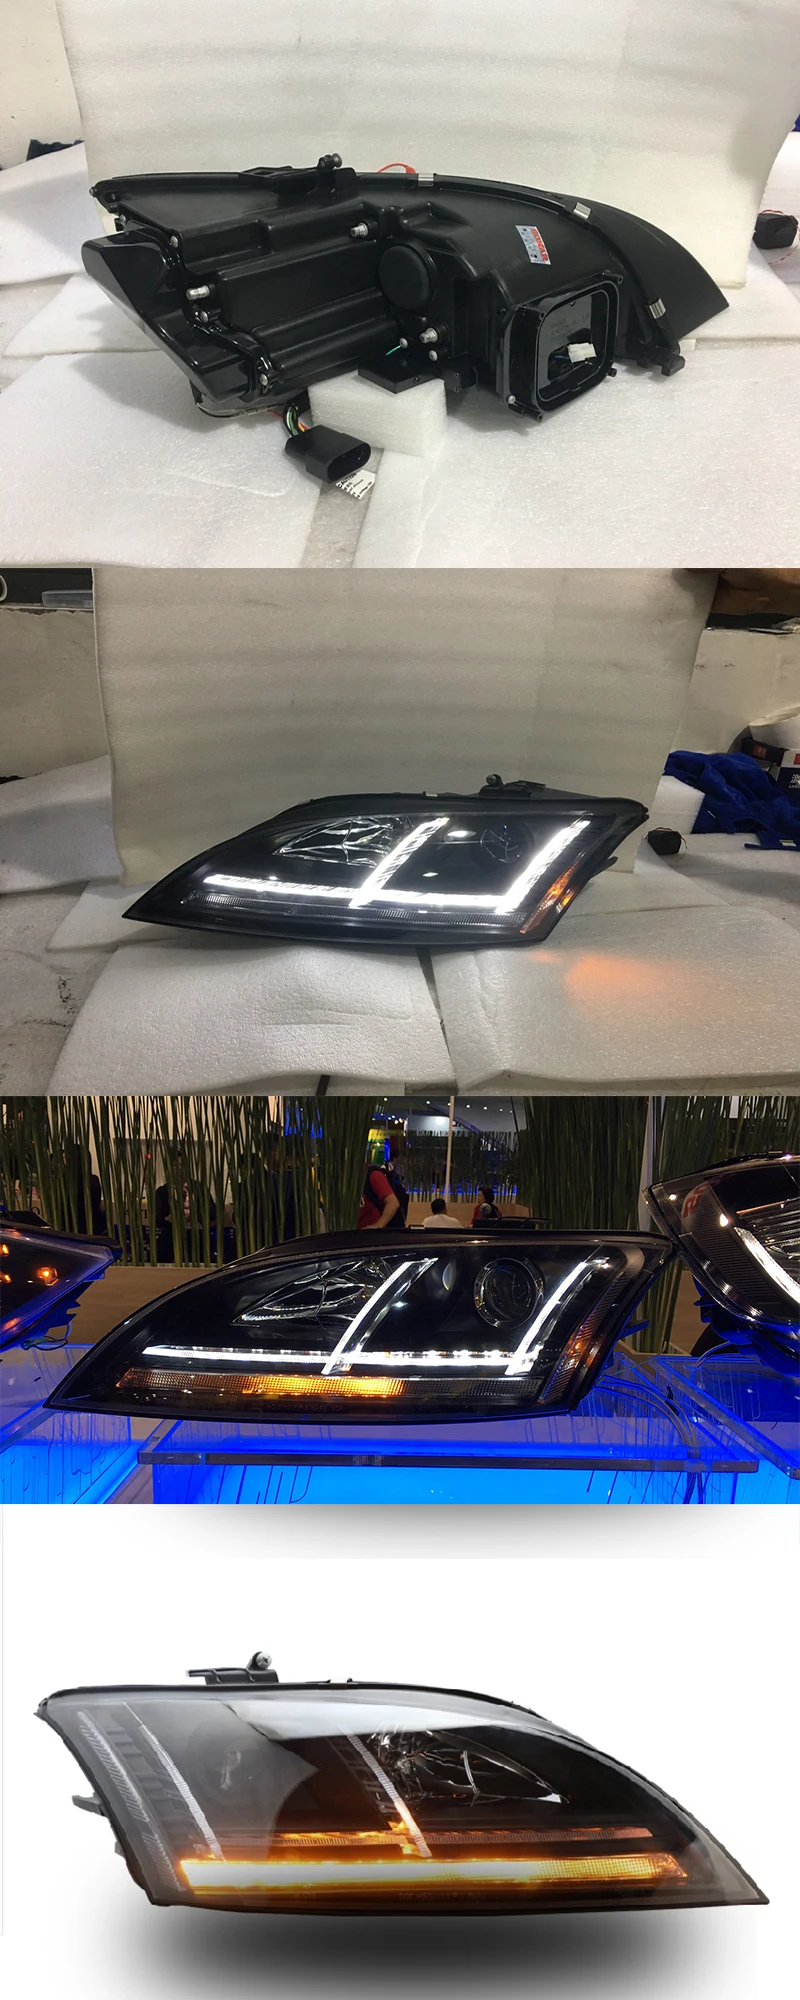 Светодиодный головной светильник для Audi TT светодиодный налобный фонарь спереди светильник s 2006 2007 2008 2009 2010 2011 2012 2013 год динамический Поворотный Светильник s